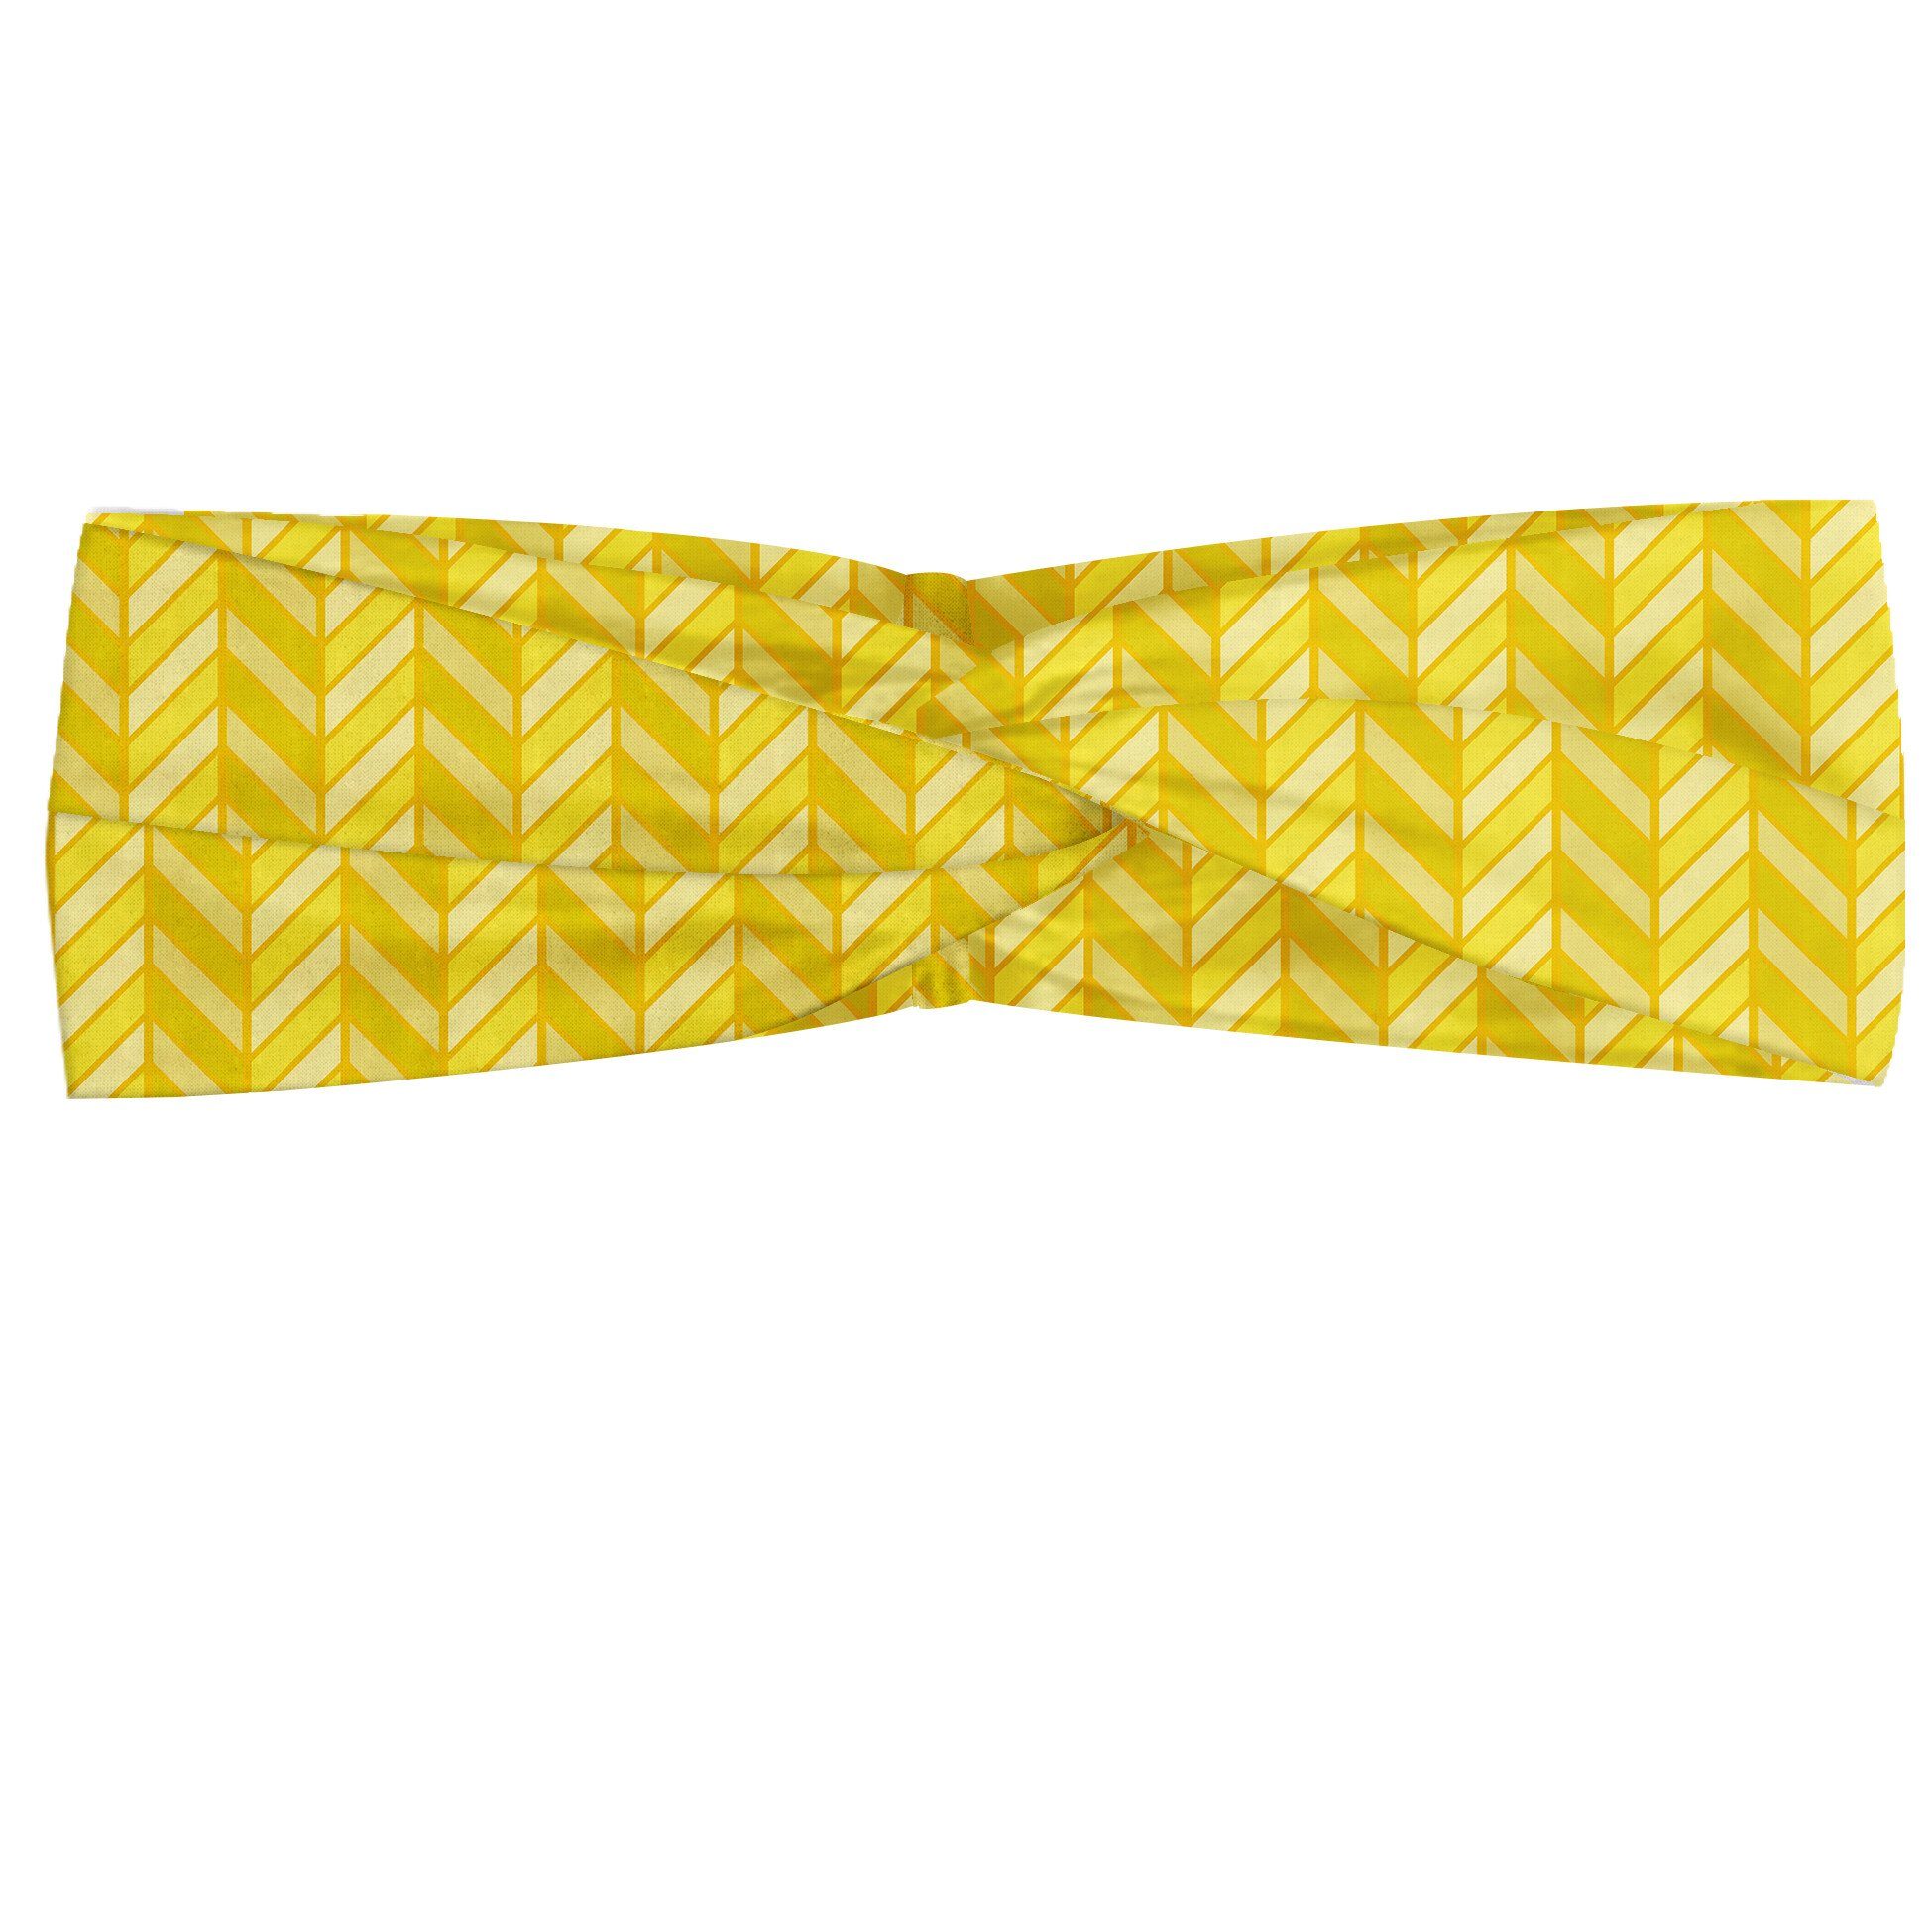 Abakuhaus Stirnband Elastisch und Angenehme alltags accessories Yellow Chevron Vertikal Retro